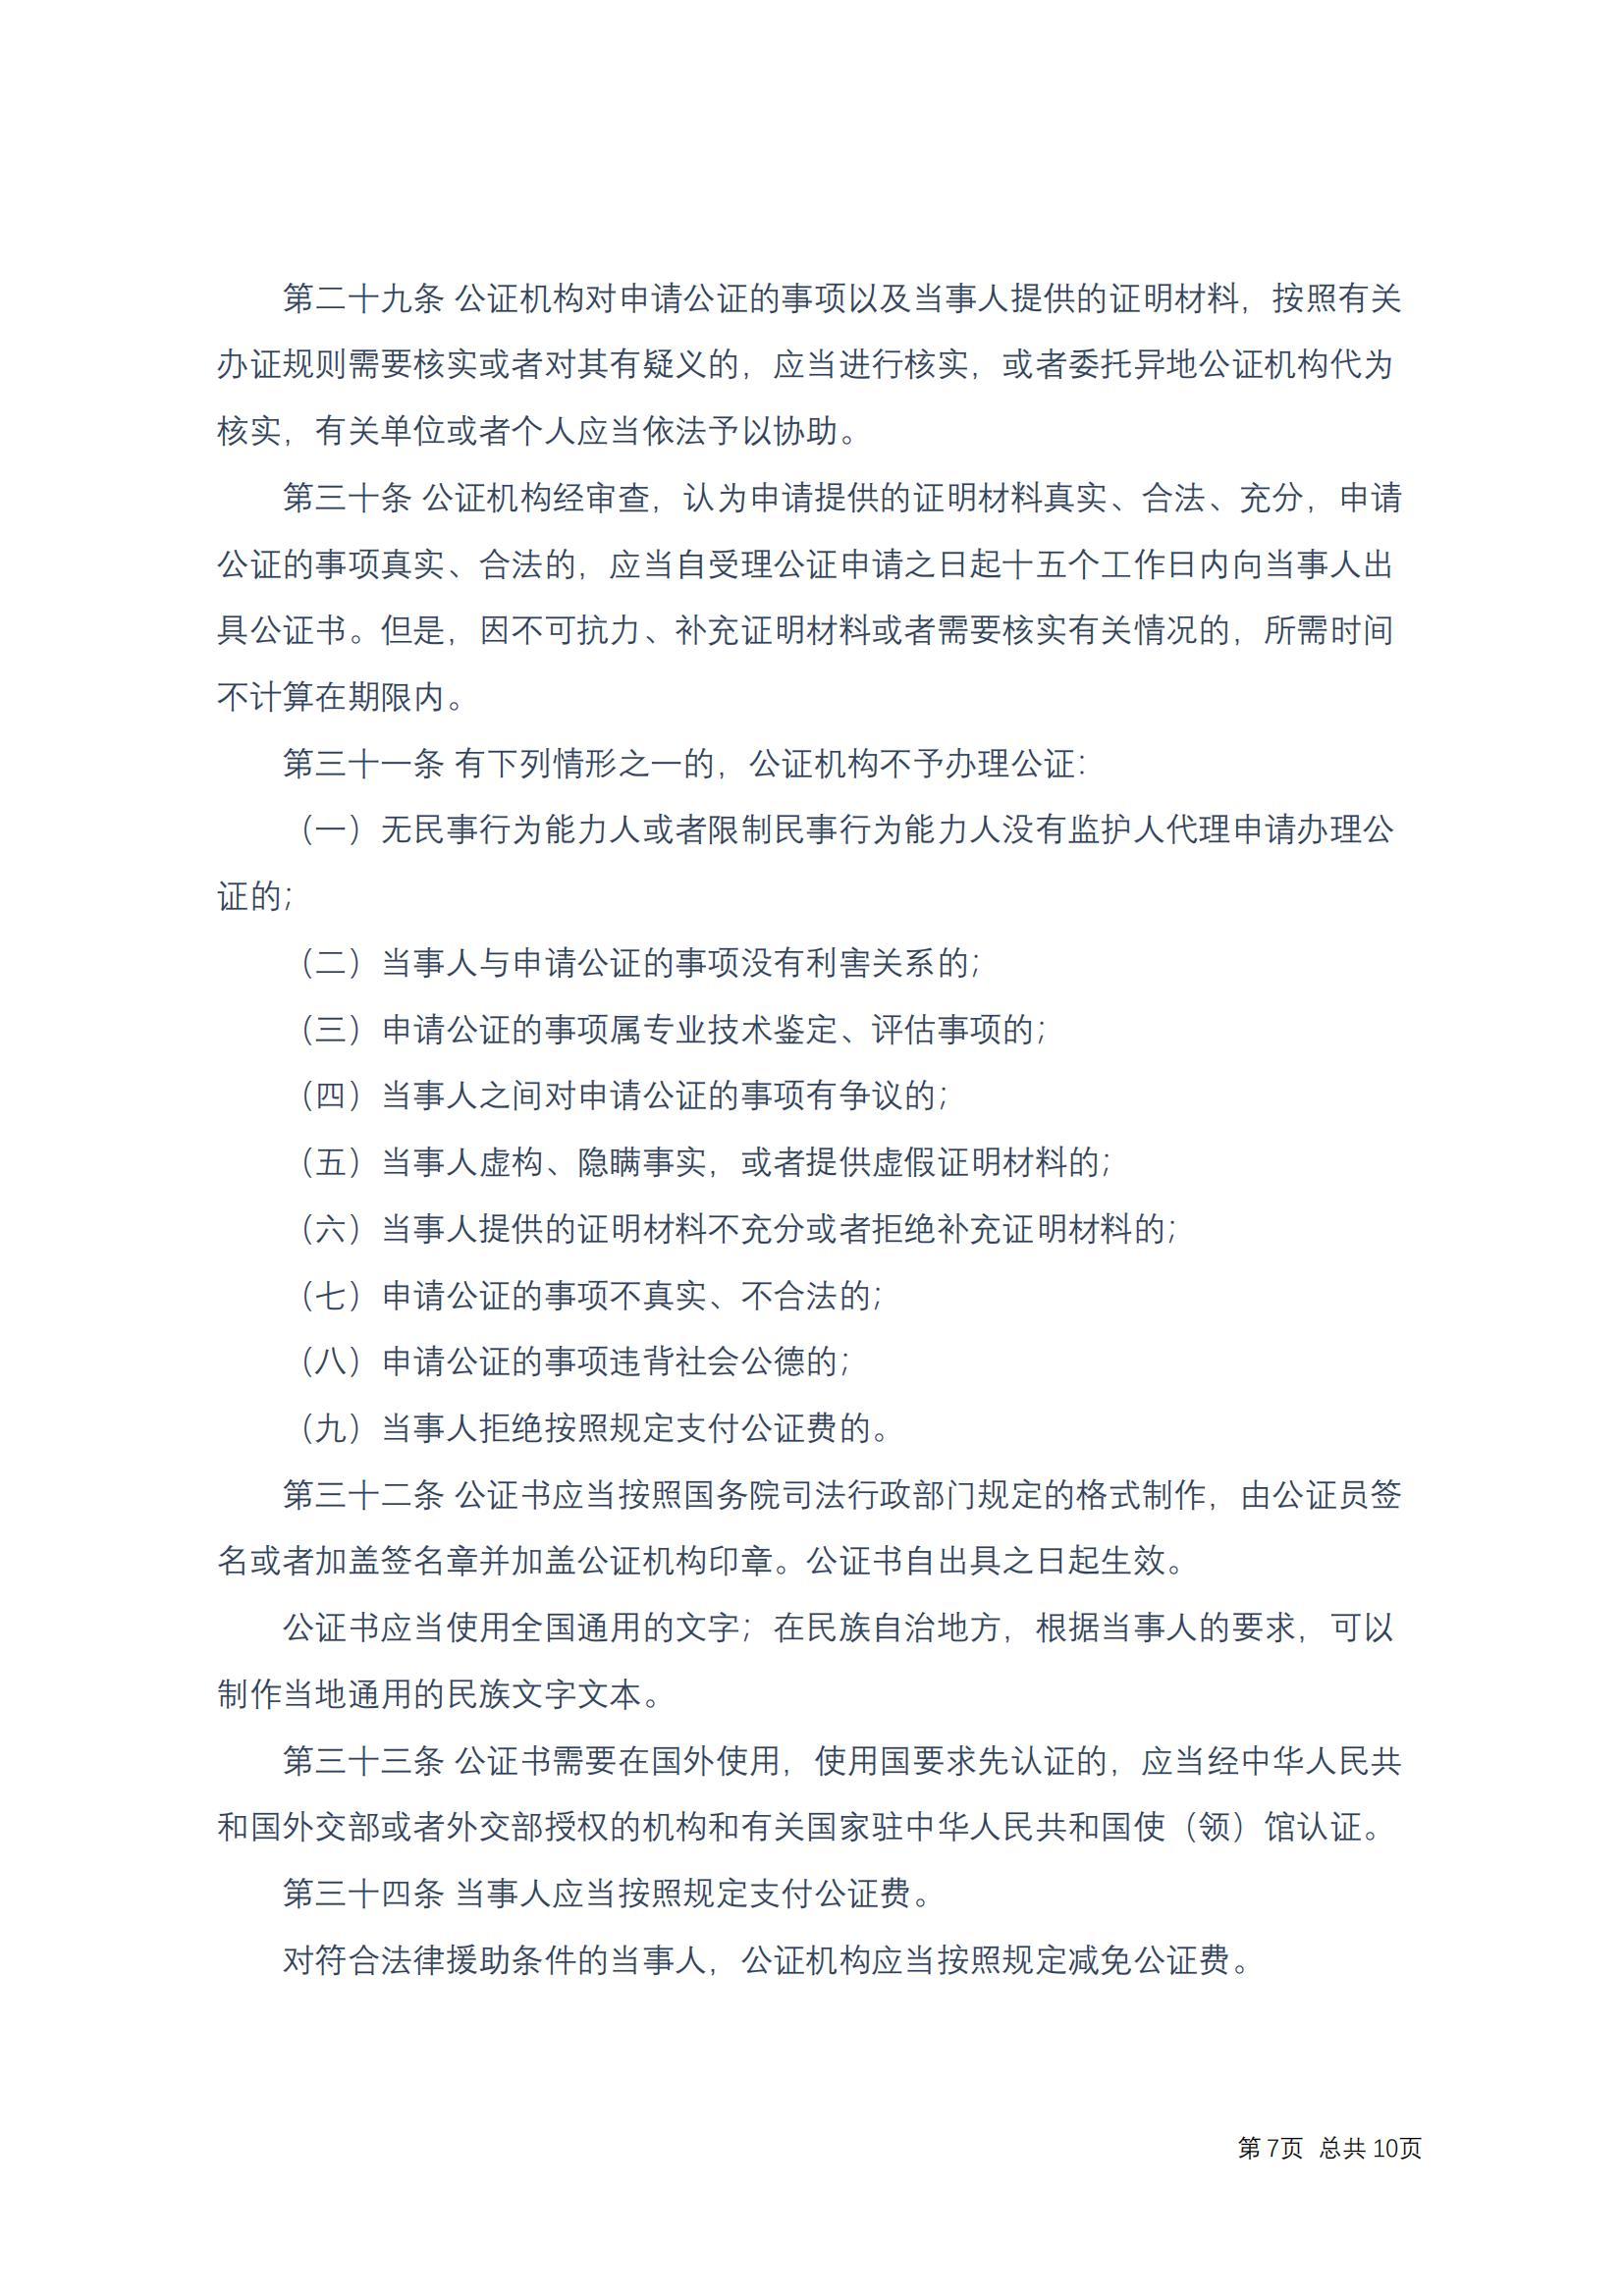 中华人民共和国公证法(2017修正)修改过_06